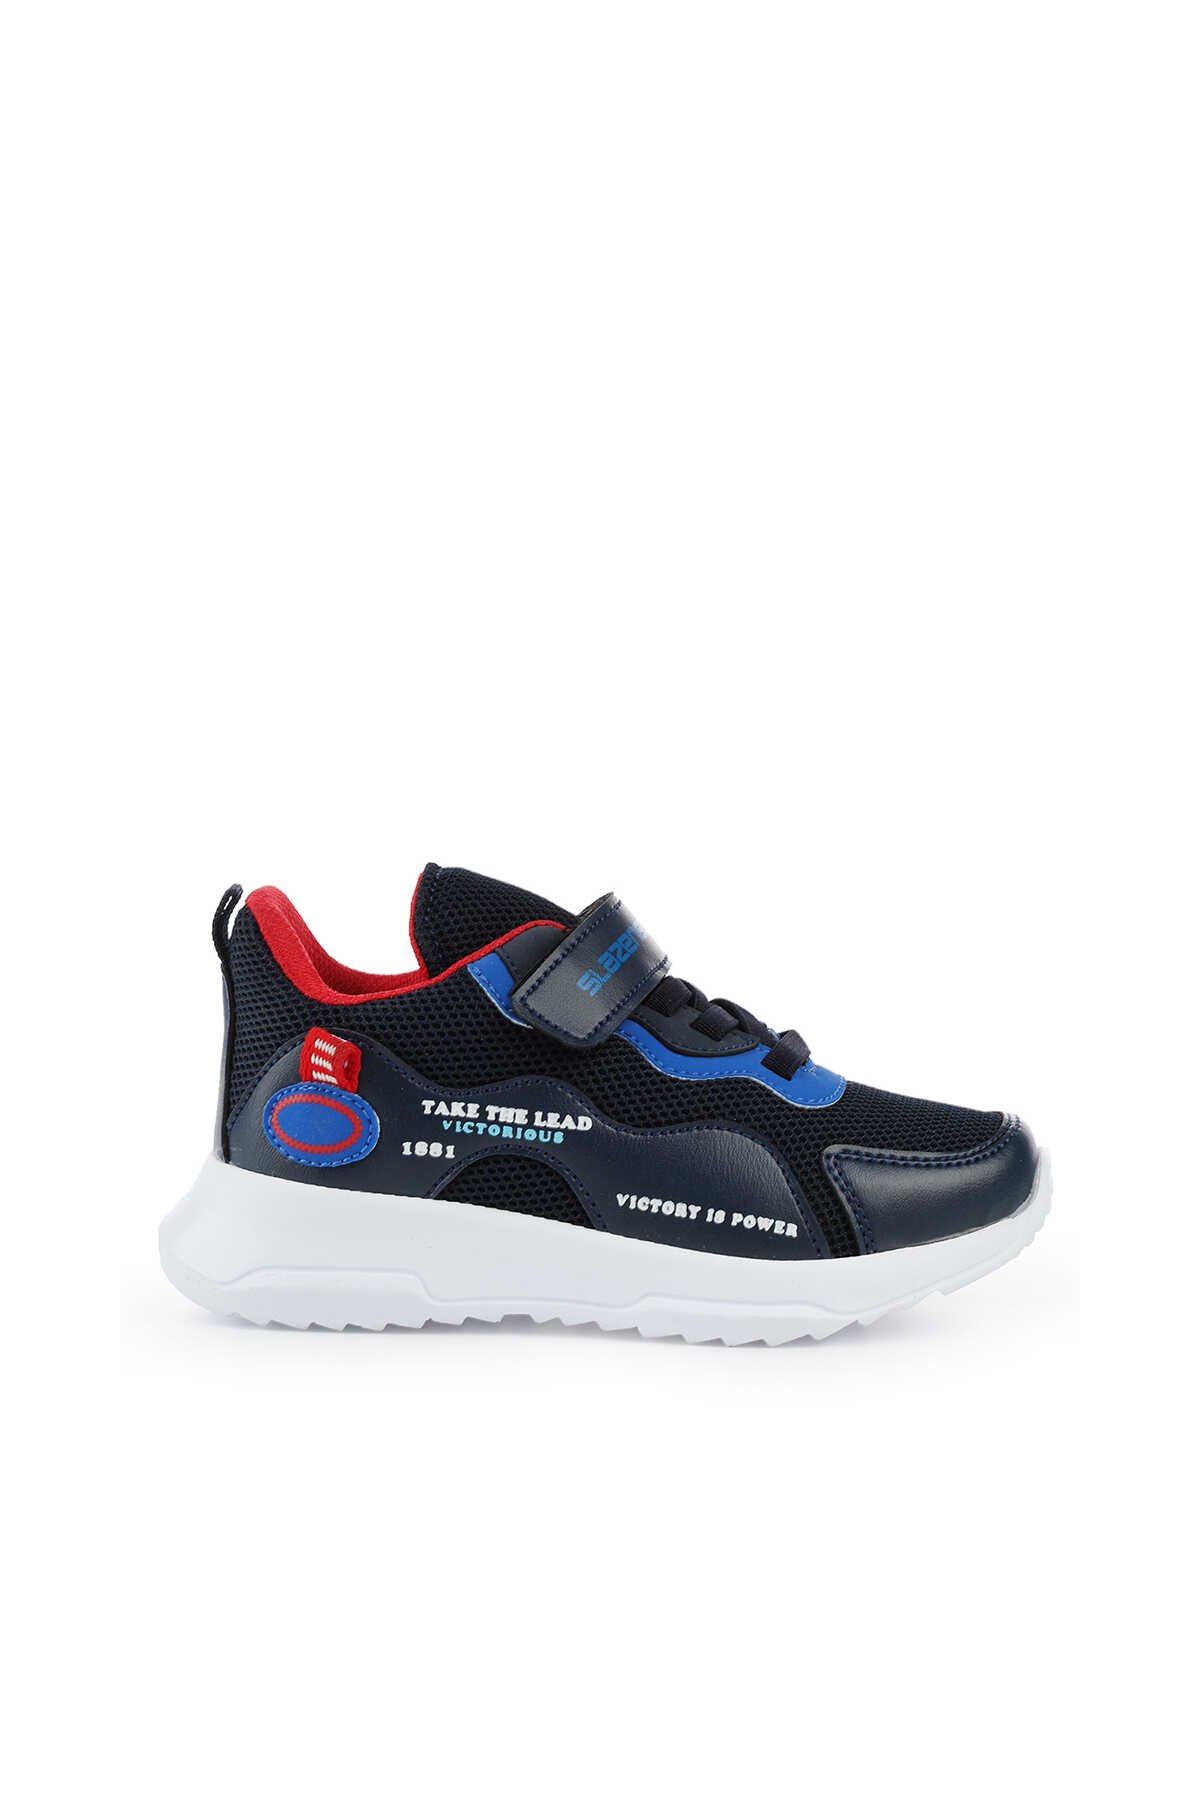 Slazenger - Slazenger KEALA Sneaker Erkek Çocuk Ayakkabı Lacivert / Saks Mavi